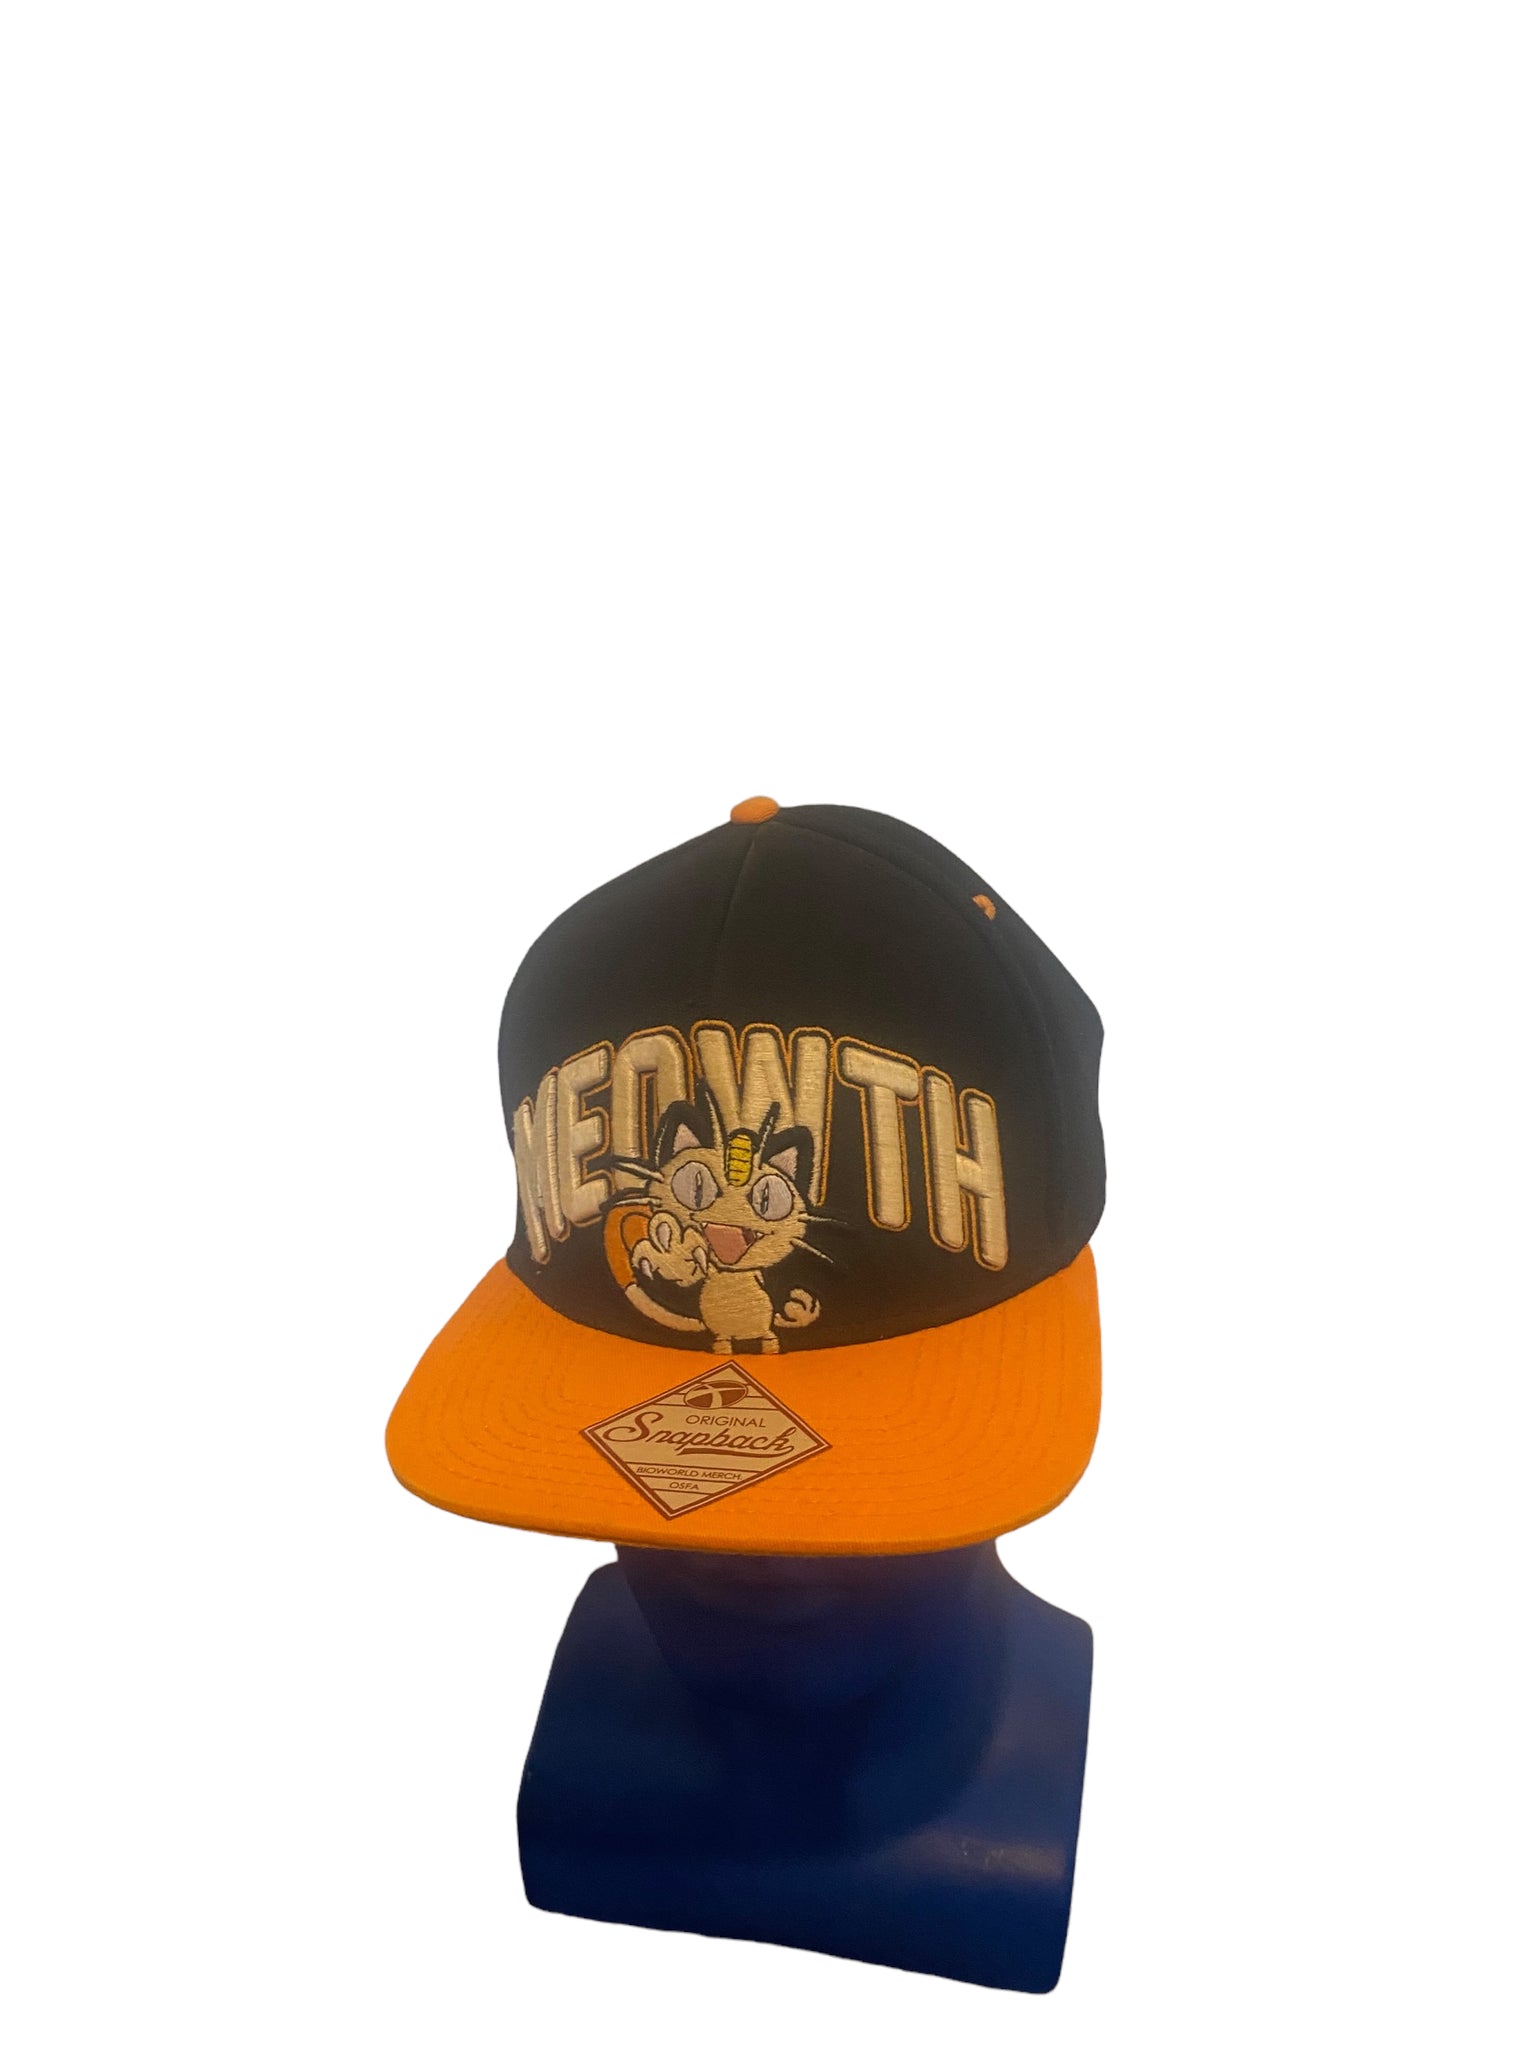 MEOWTH Pokémon Adjustable SnapBack Hat Cap